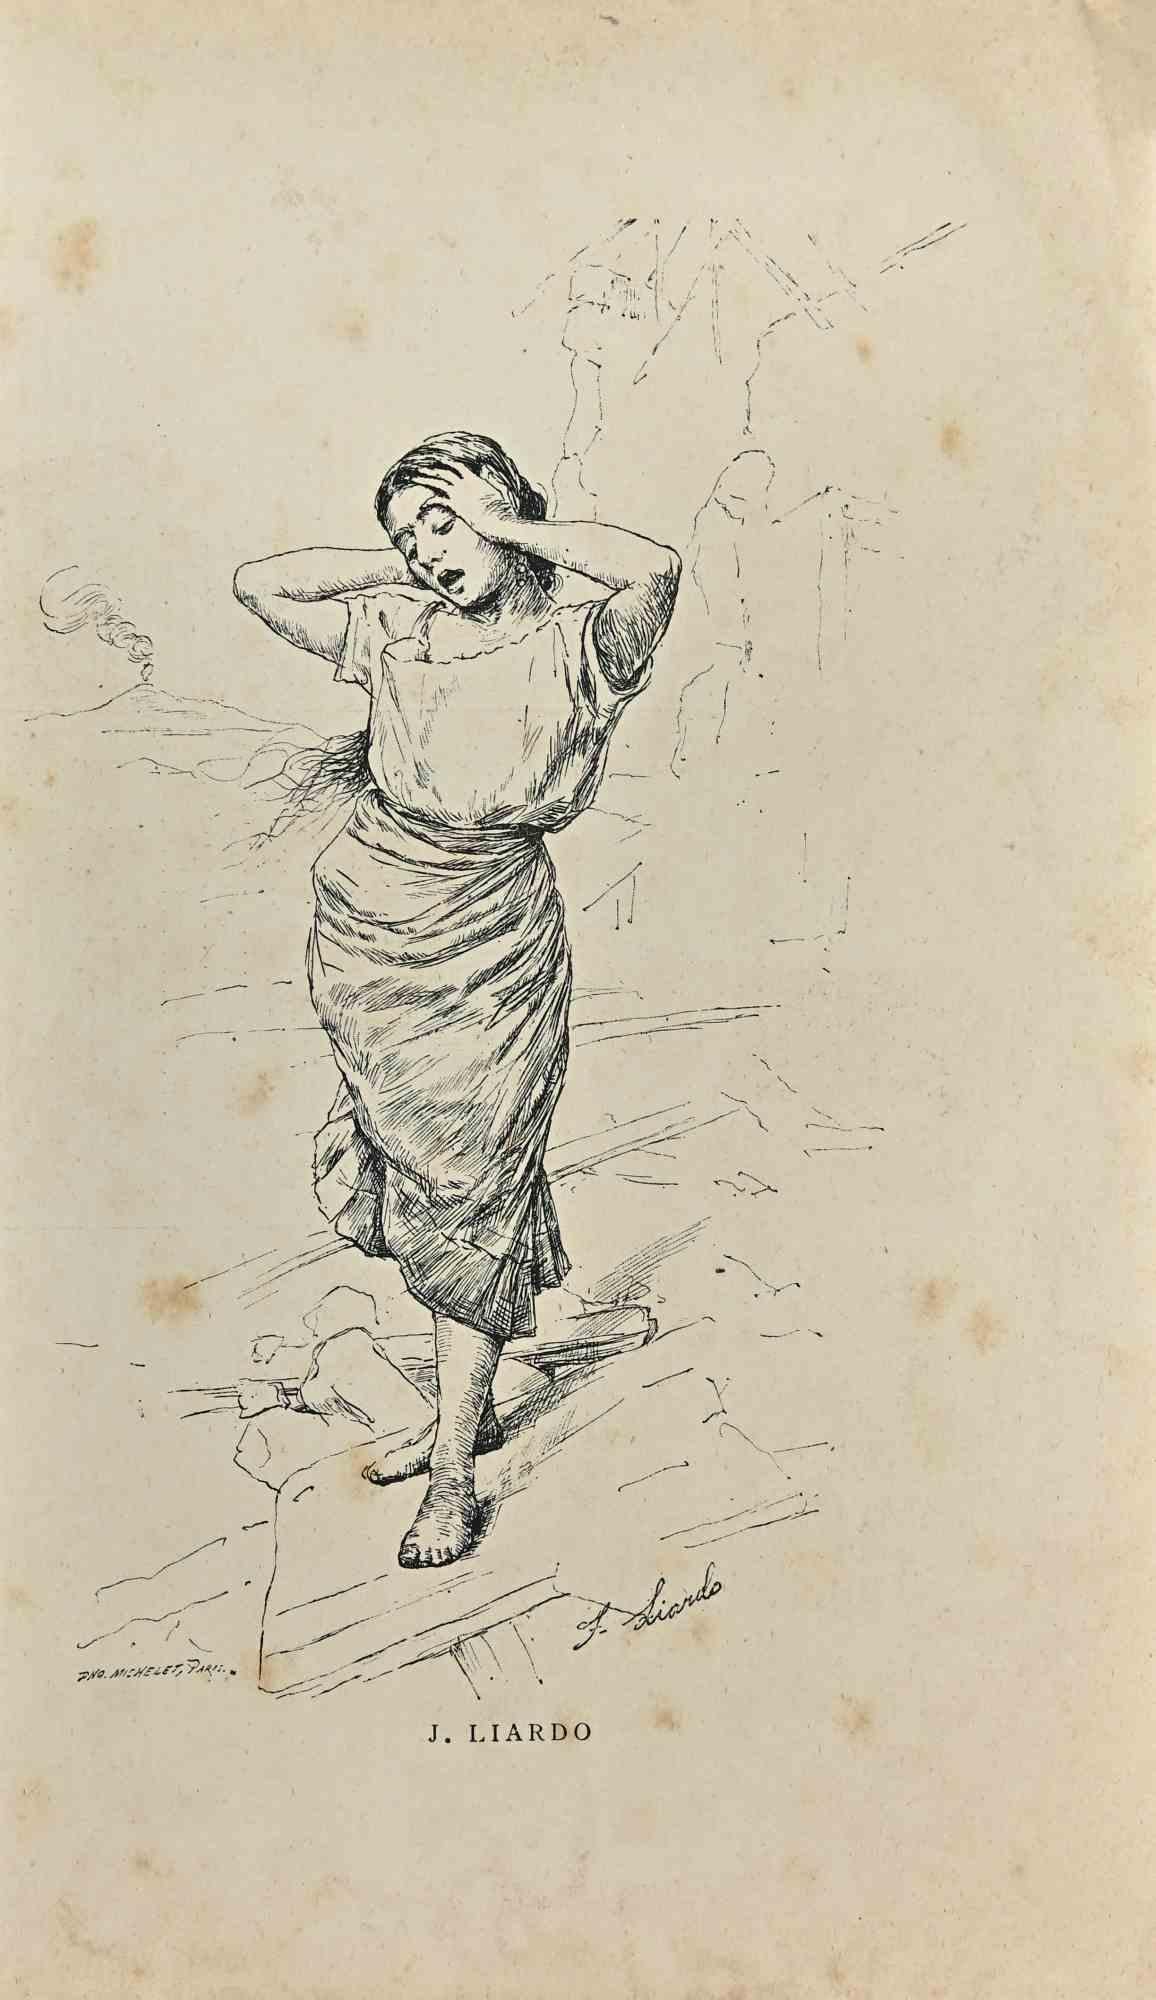 Femme ist eine Radierung von Joseph Liardo aus dem späten 19. Jahrhundert.

Guter Zustand auf gelbem Papier.

Signiert am unteren Rand.

